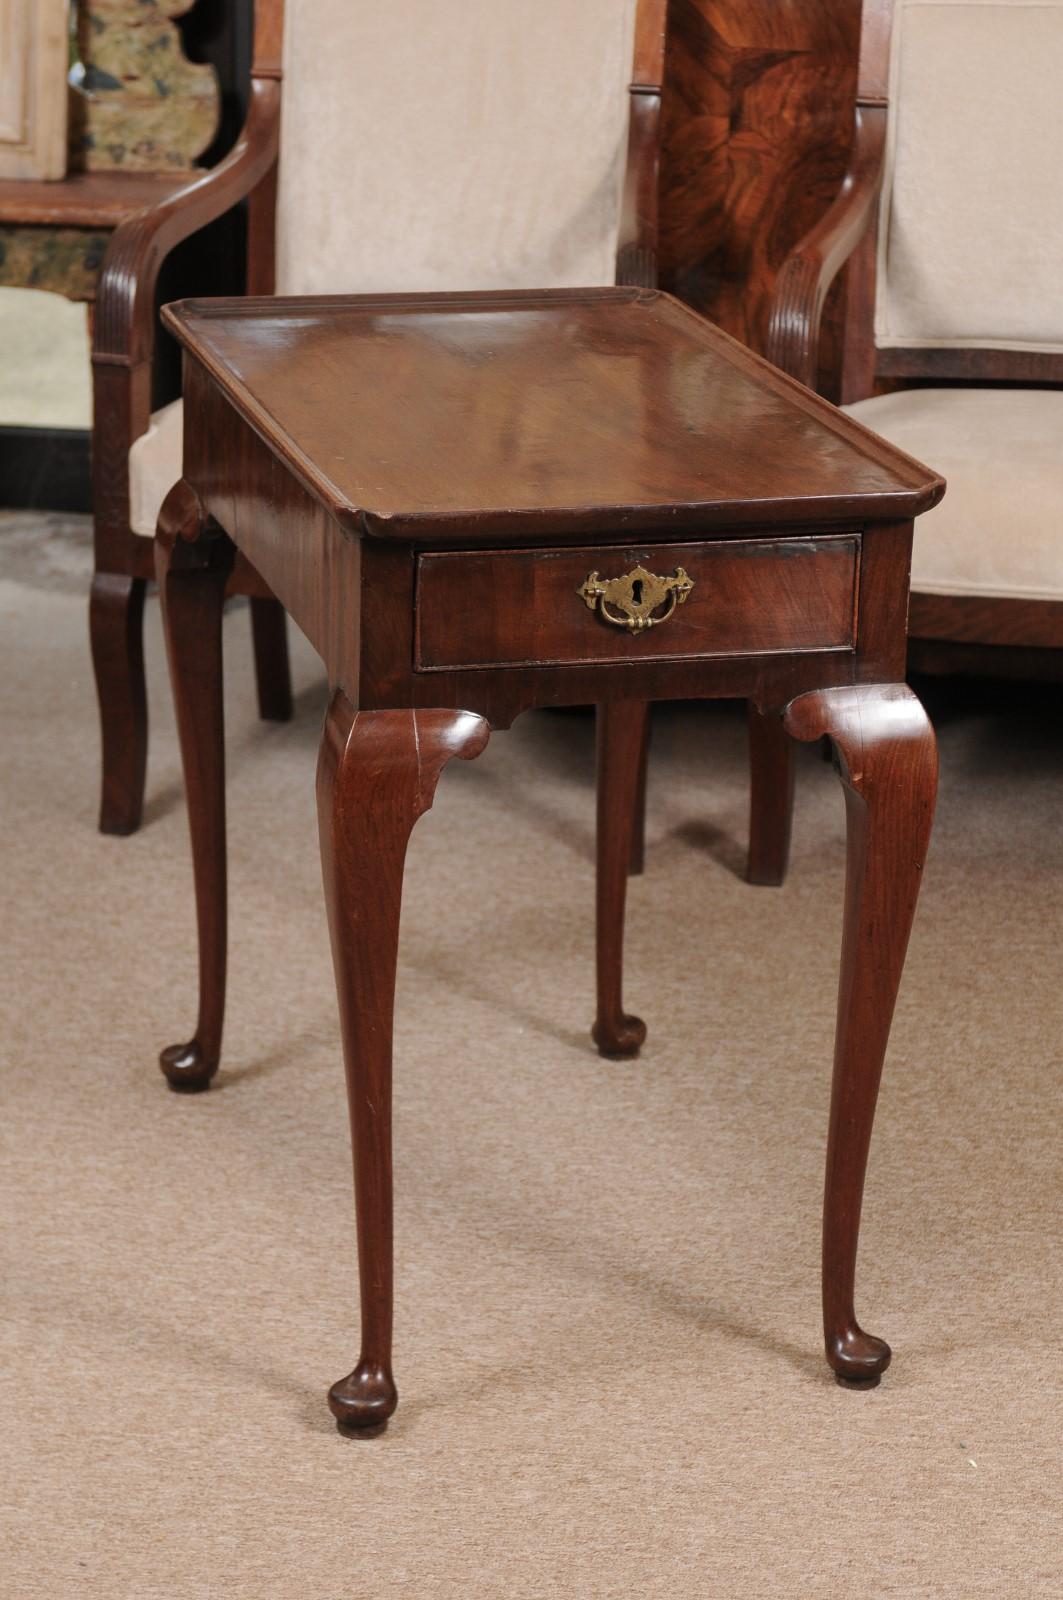 Table à thé en acajou de George II, XVIIIe siècle, avec plateau, un seul tiroir dans la frise, avec un bourrelet de coq bordant le tiroir et une tirette en laiton. Les pieds sont de forme cabriole et se terminent par des pieds pad.